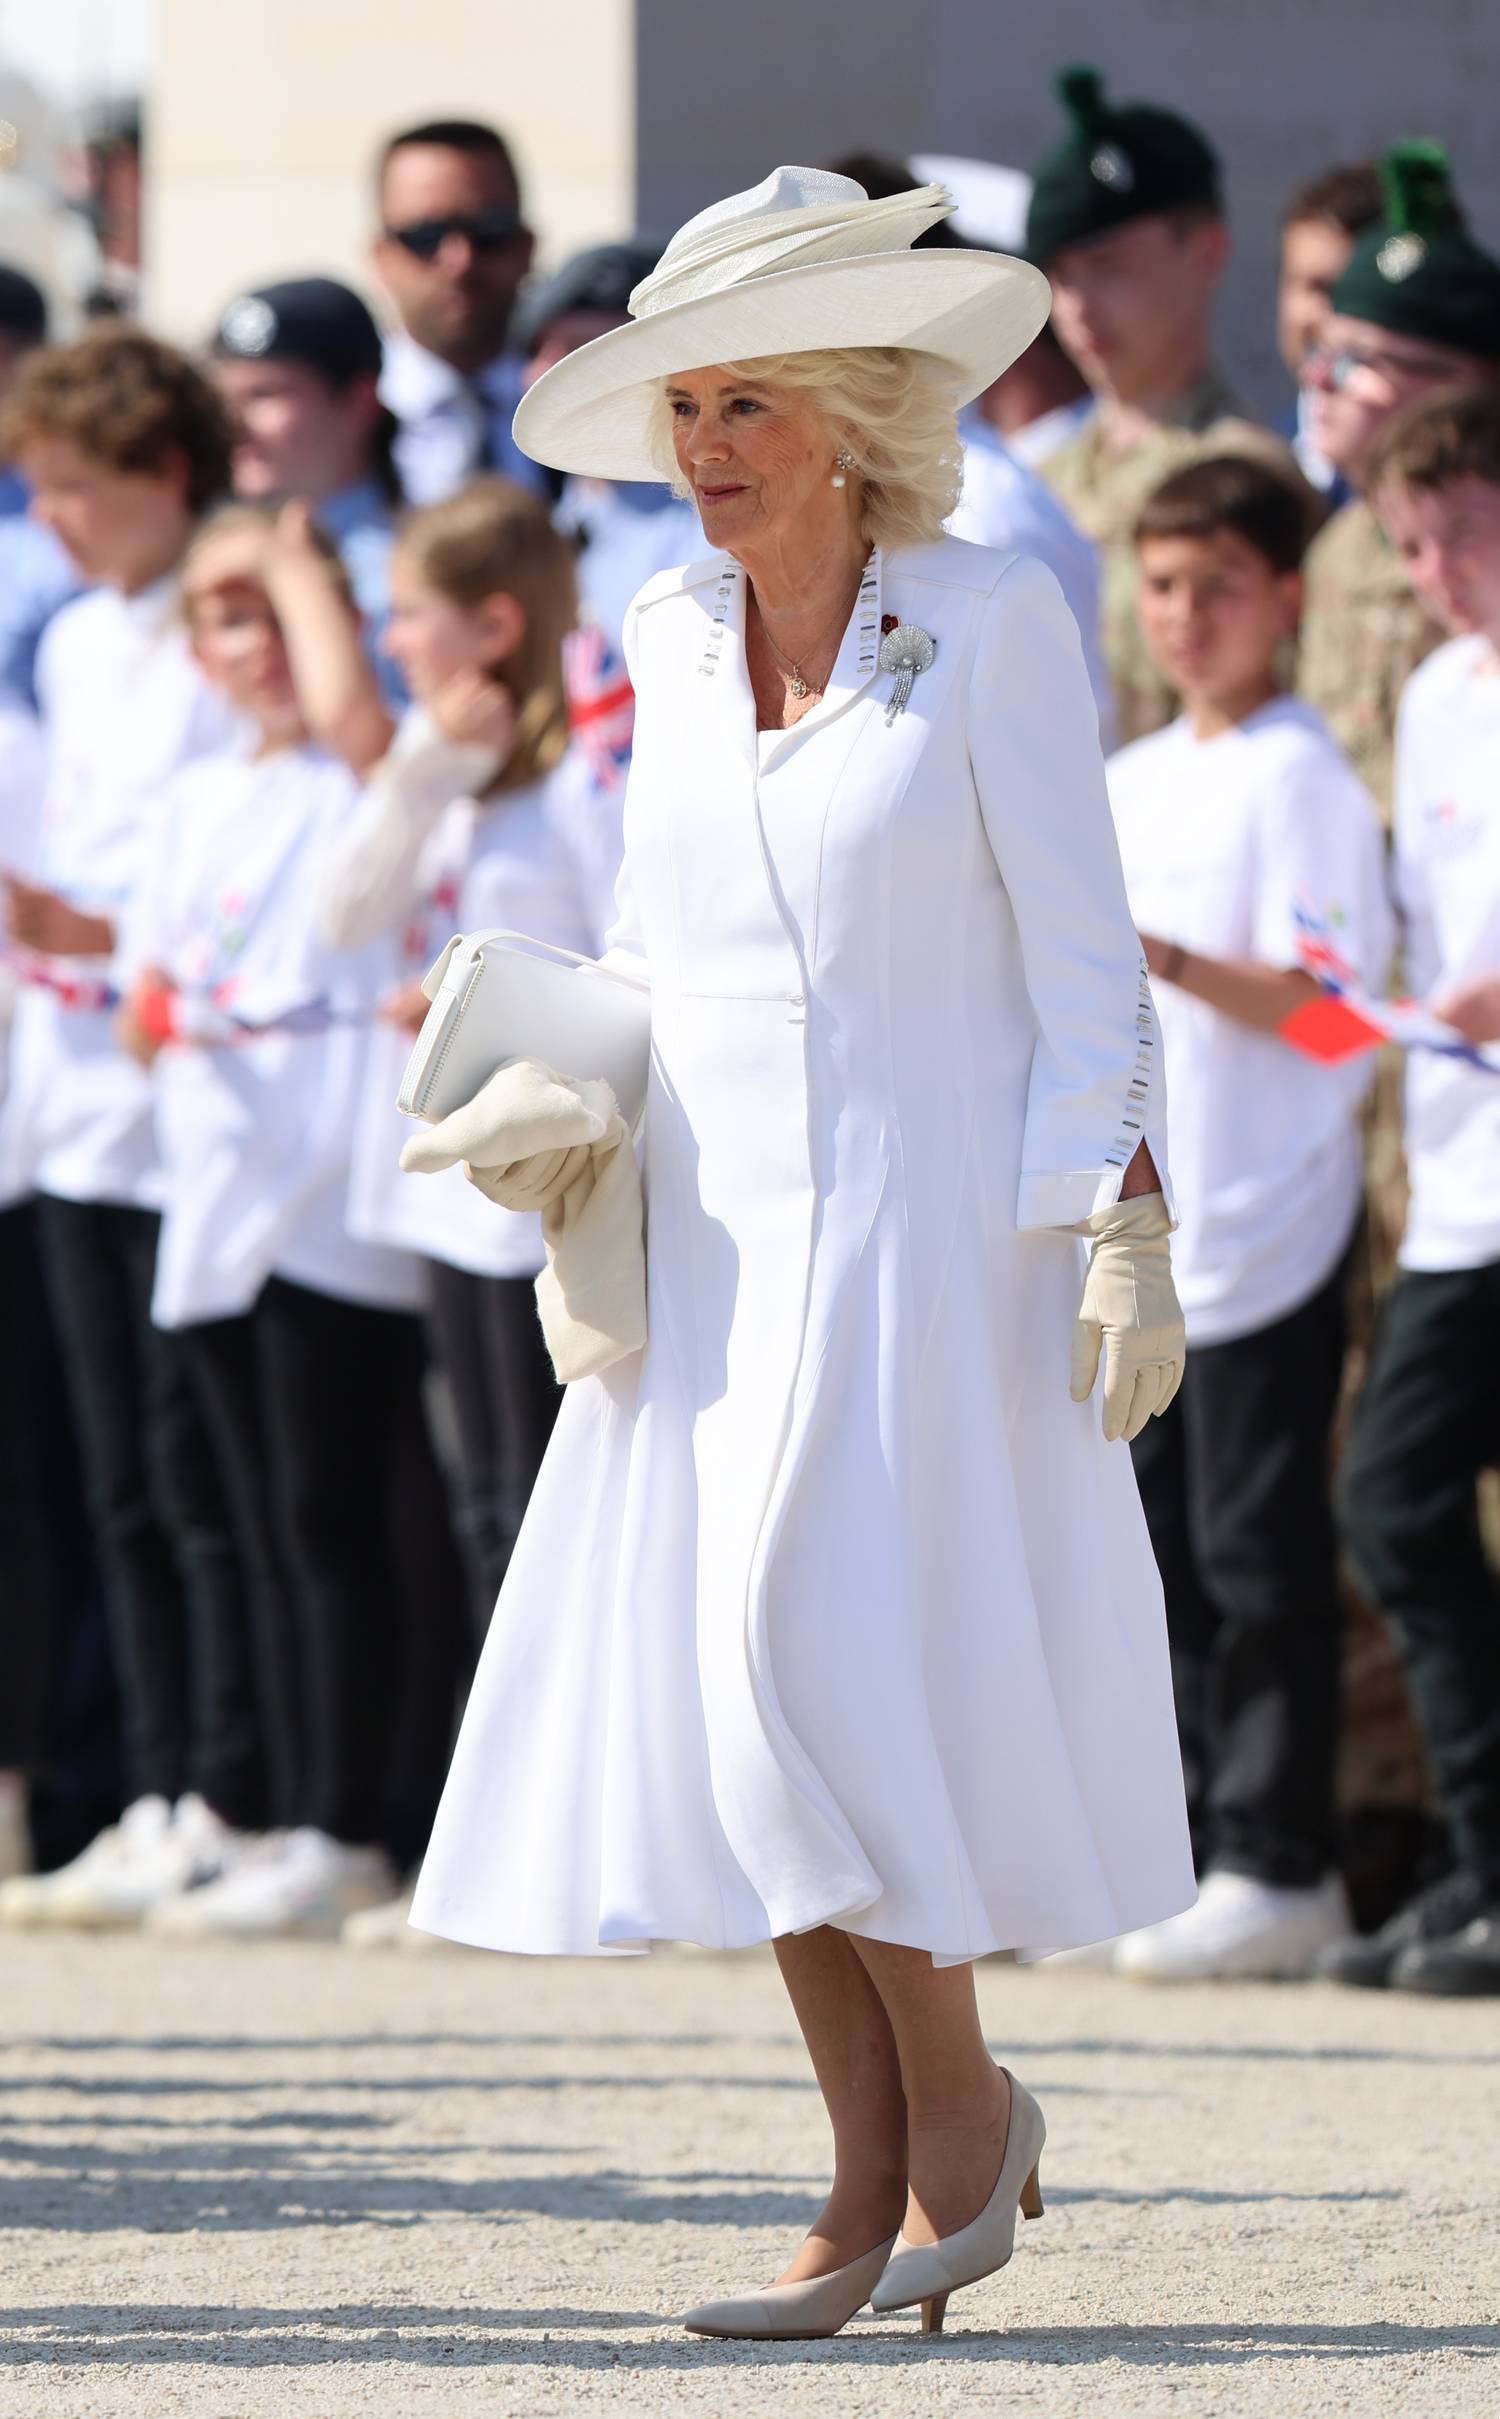 Kamilla királyné egy fehér kabátruhában ment a megemlékezésre.